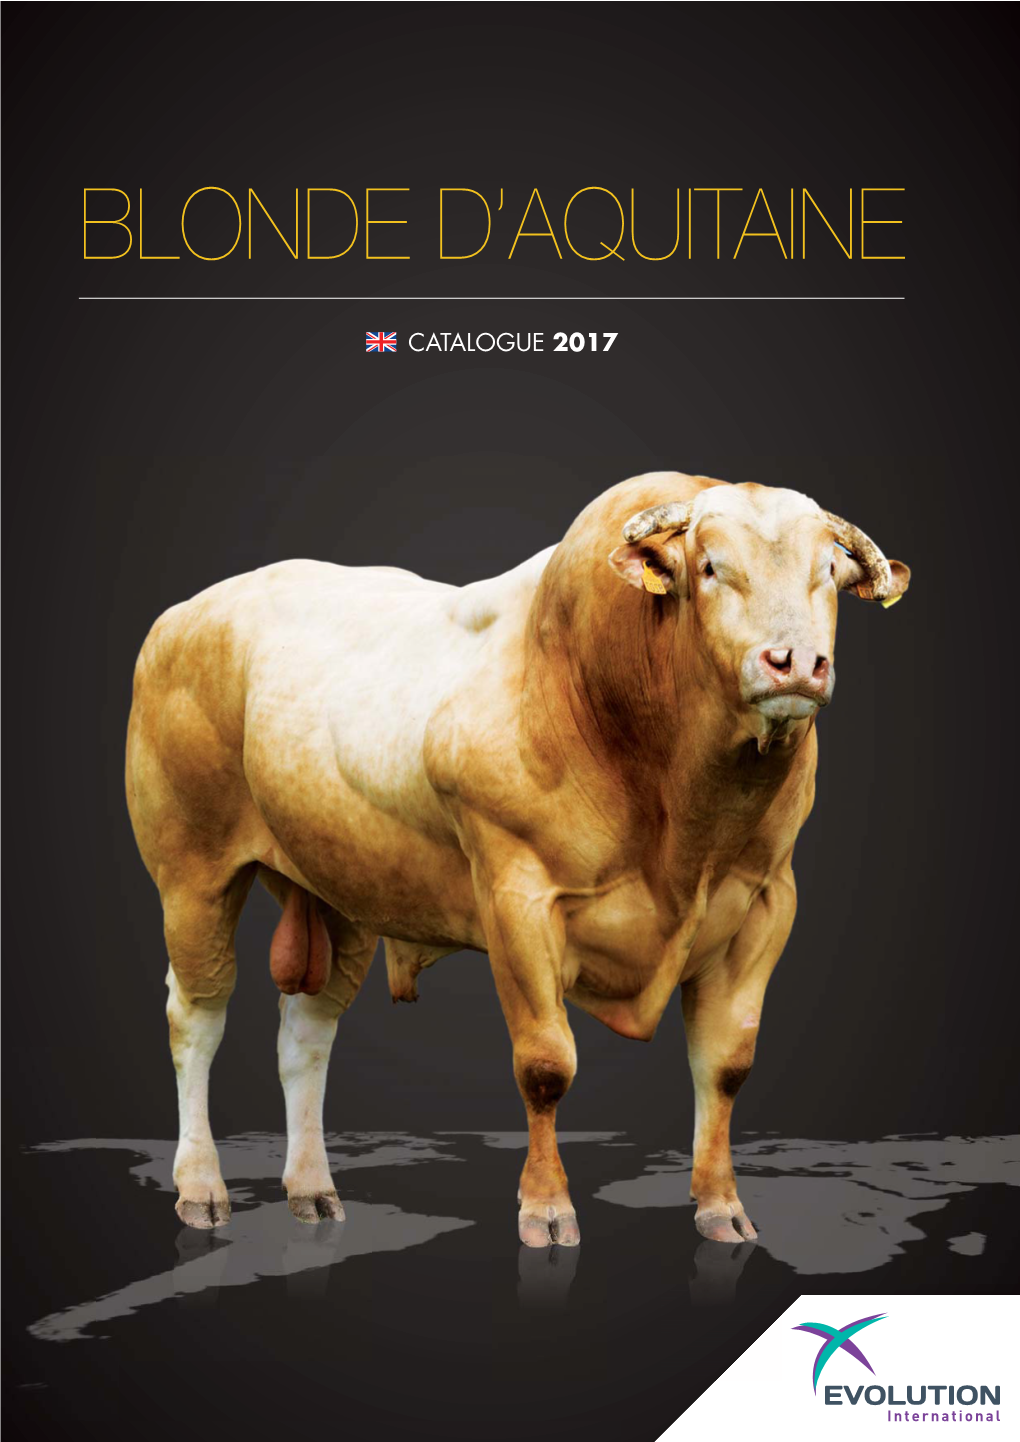 Blonde D'aquitaine